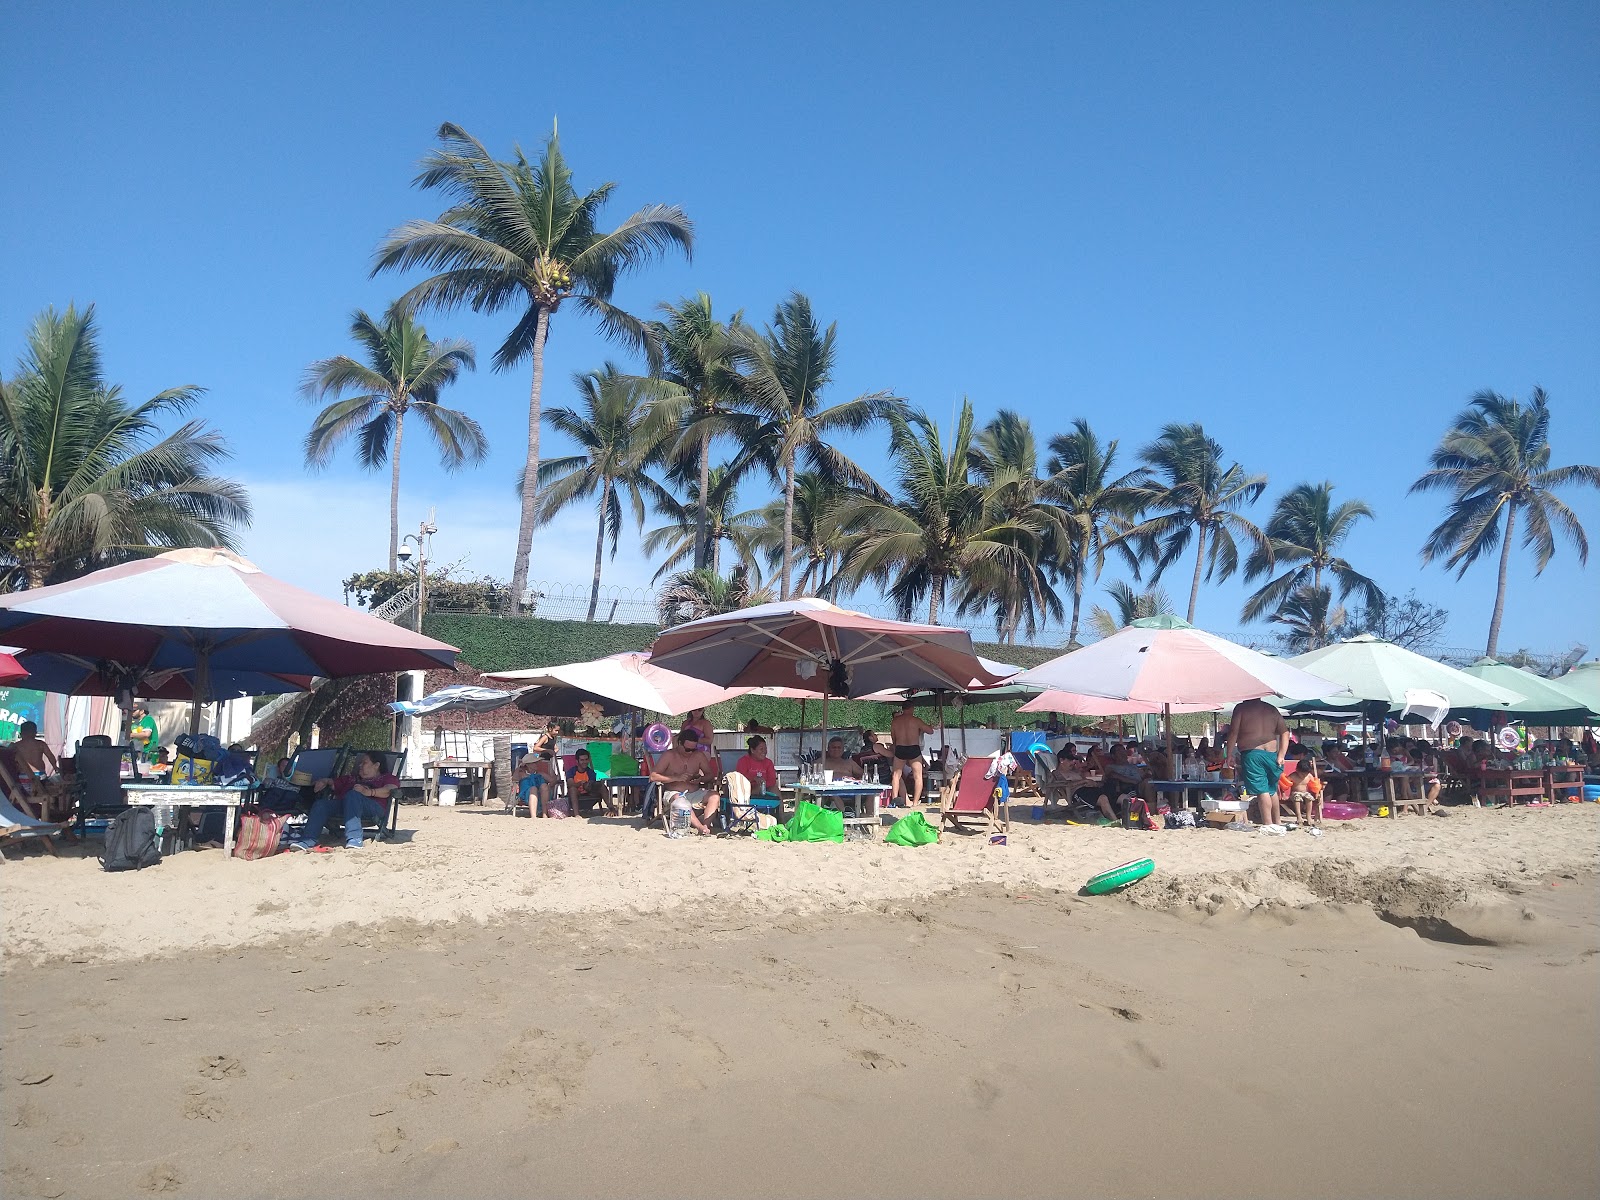 Fotografija Playa Las Brisas priljubljeno mesto med poznavalci sprostitve